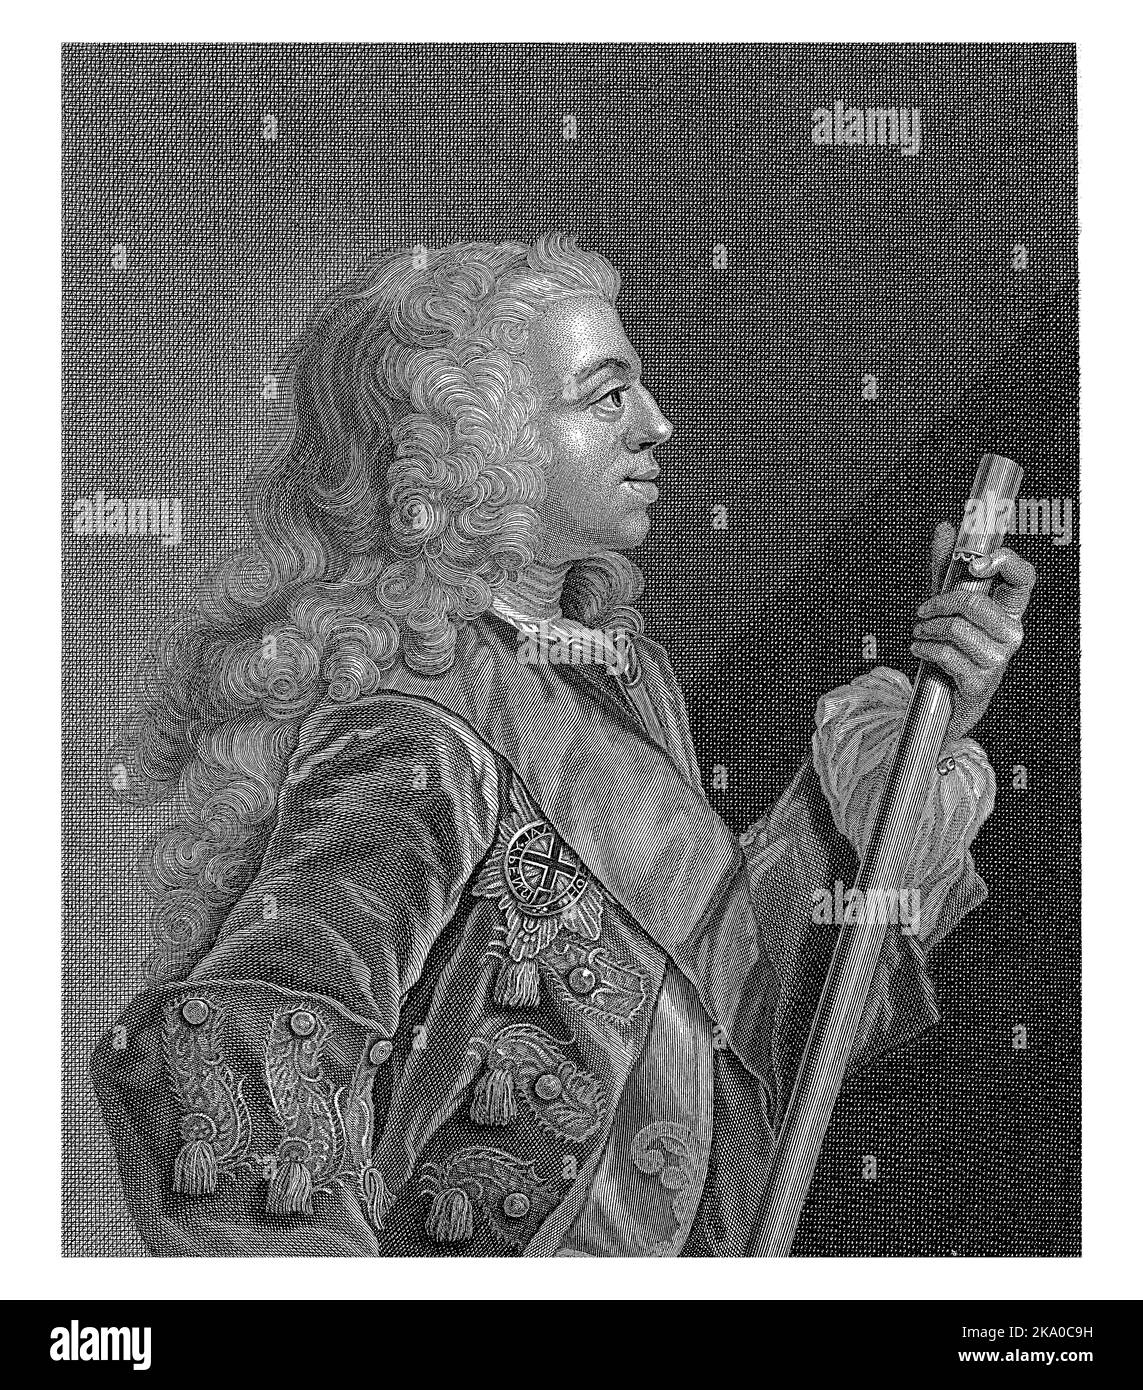 Halblanges Porträt von Willem Karel Hendrik Friso (Willem IV) van Oranje-Nassau. Der Prinz ist im Profil mit einem Kommandostab in der Hand dargestellt. Stockfoto